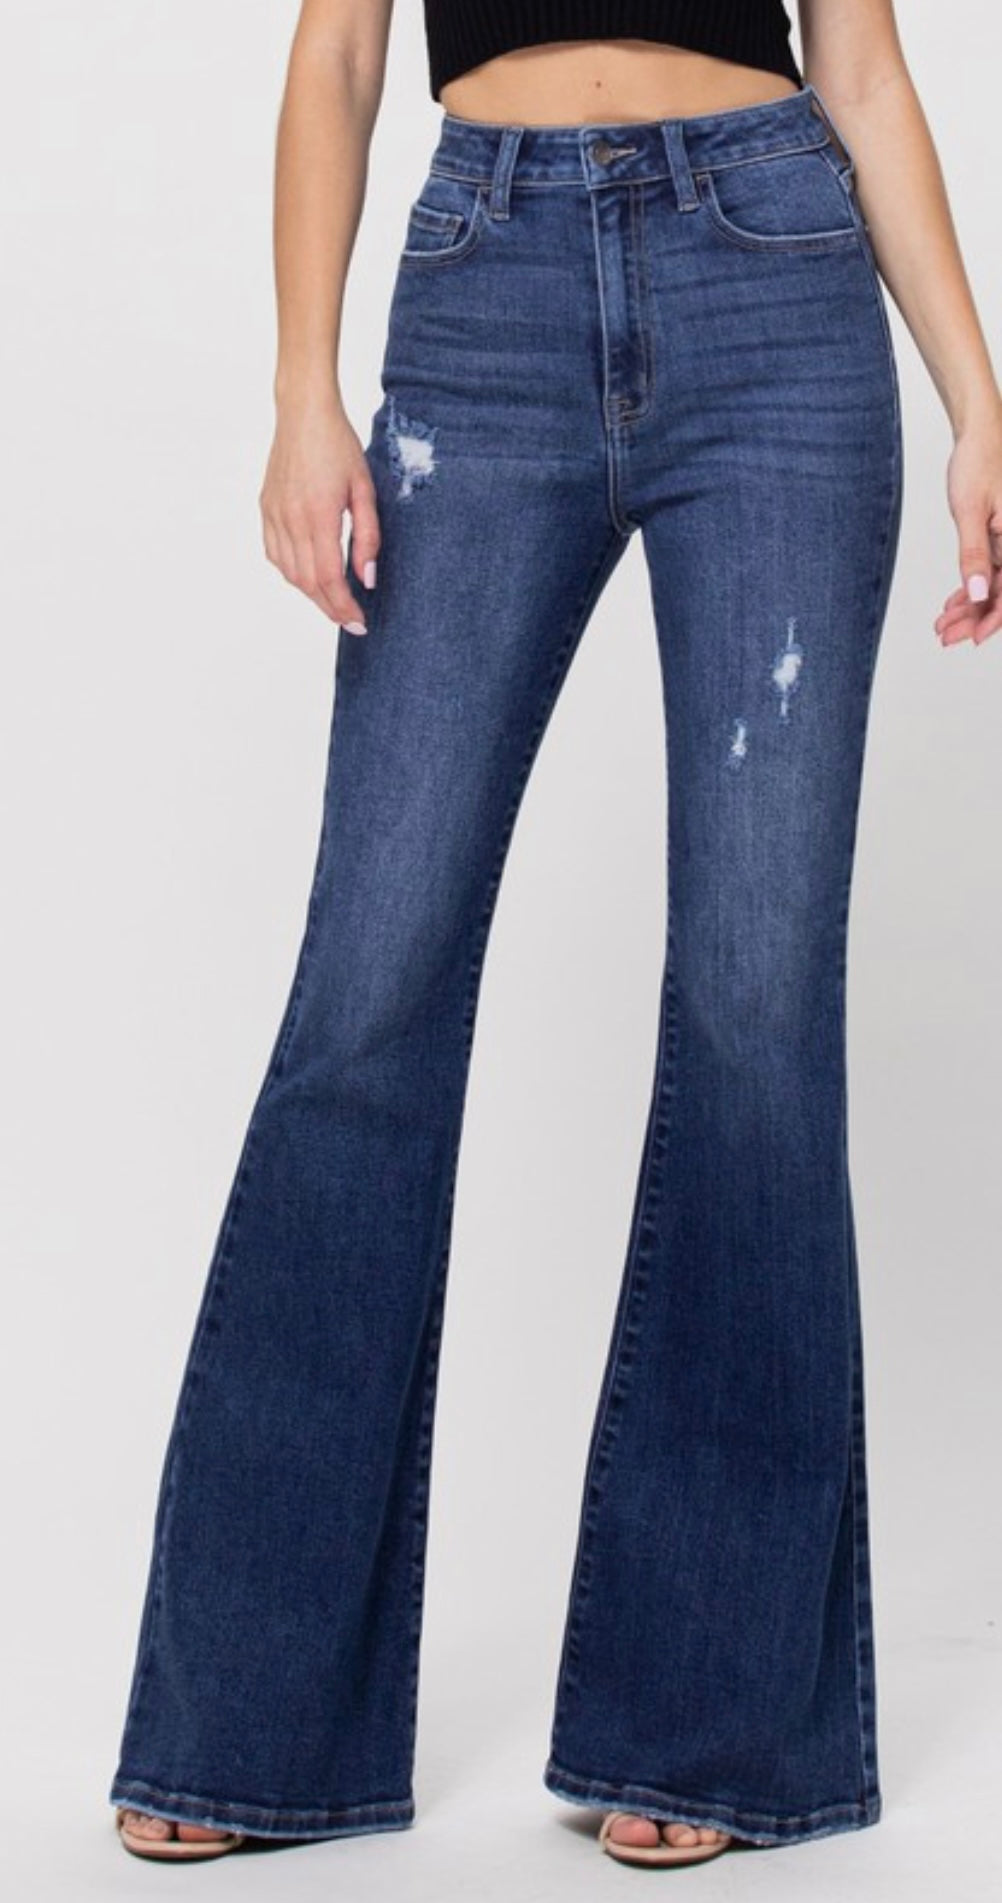 The Delilah Dark Wash Flare Jeans